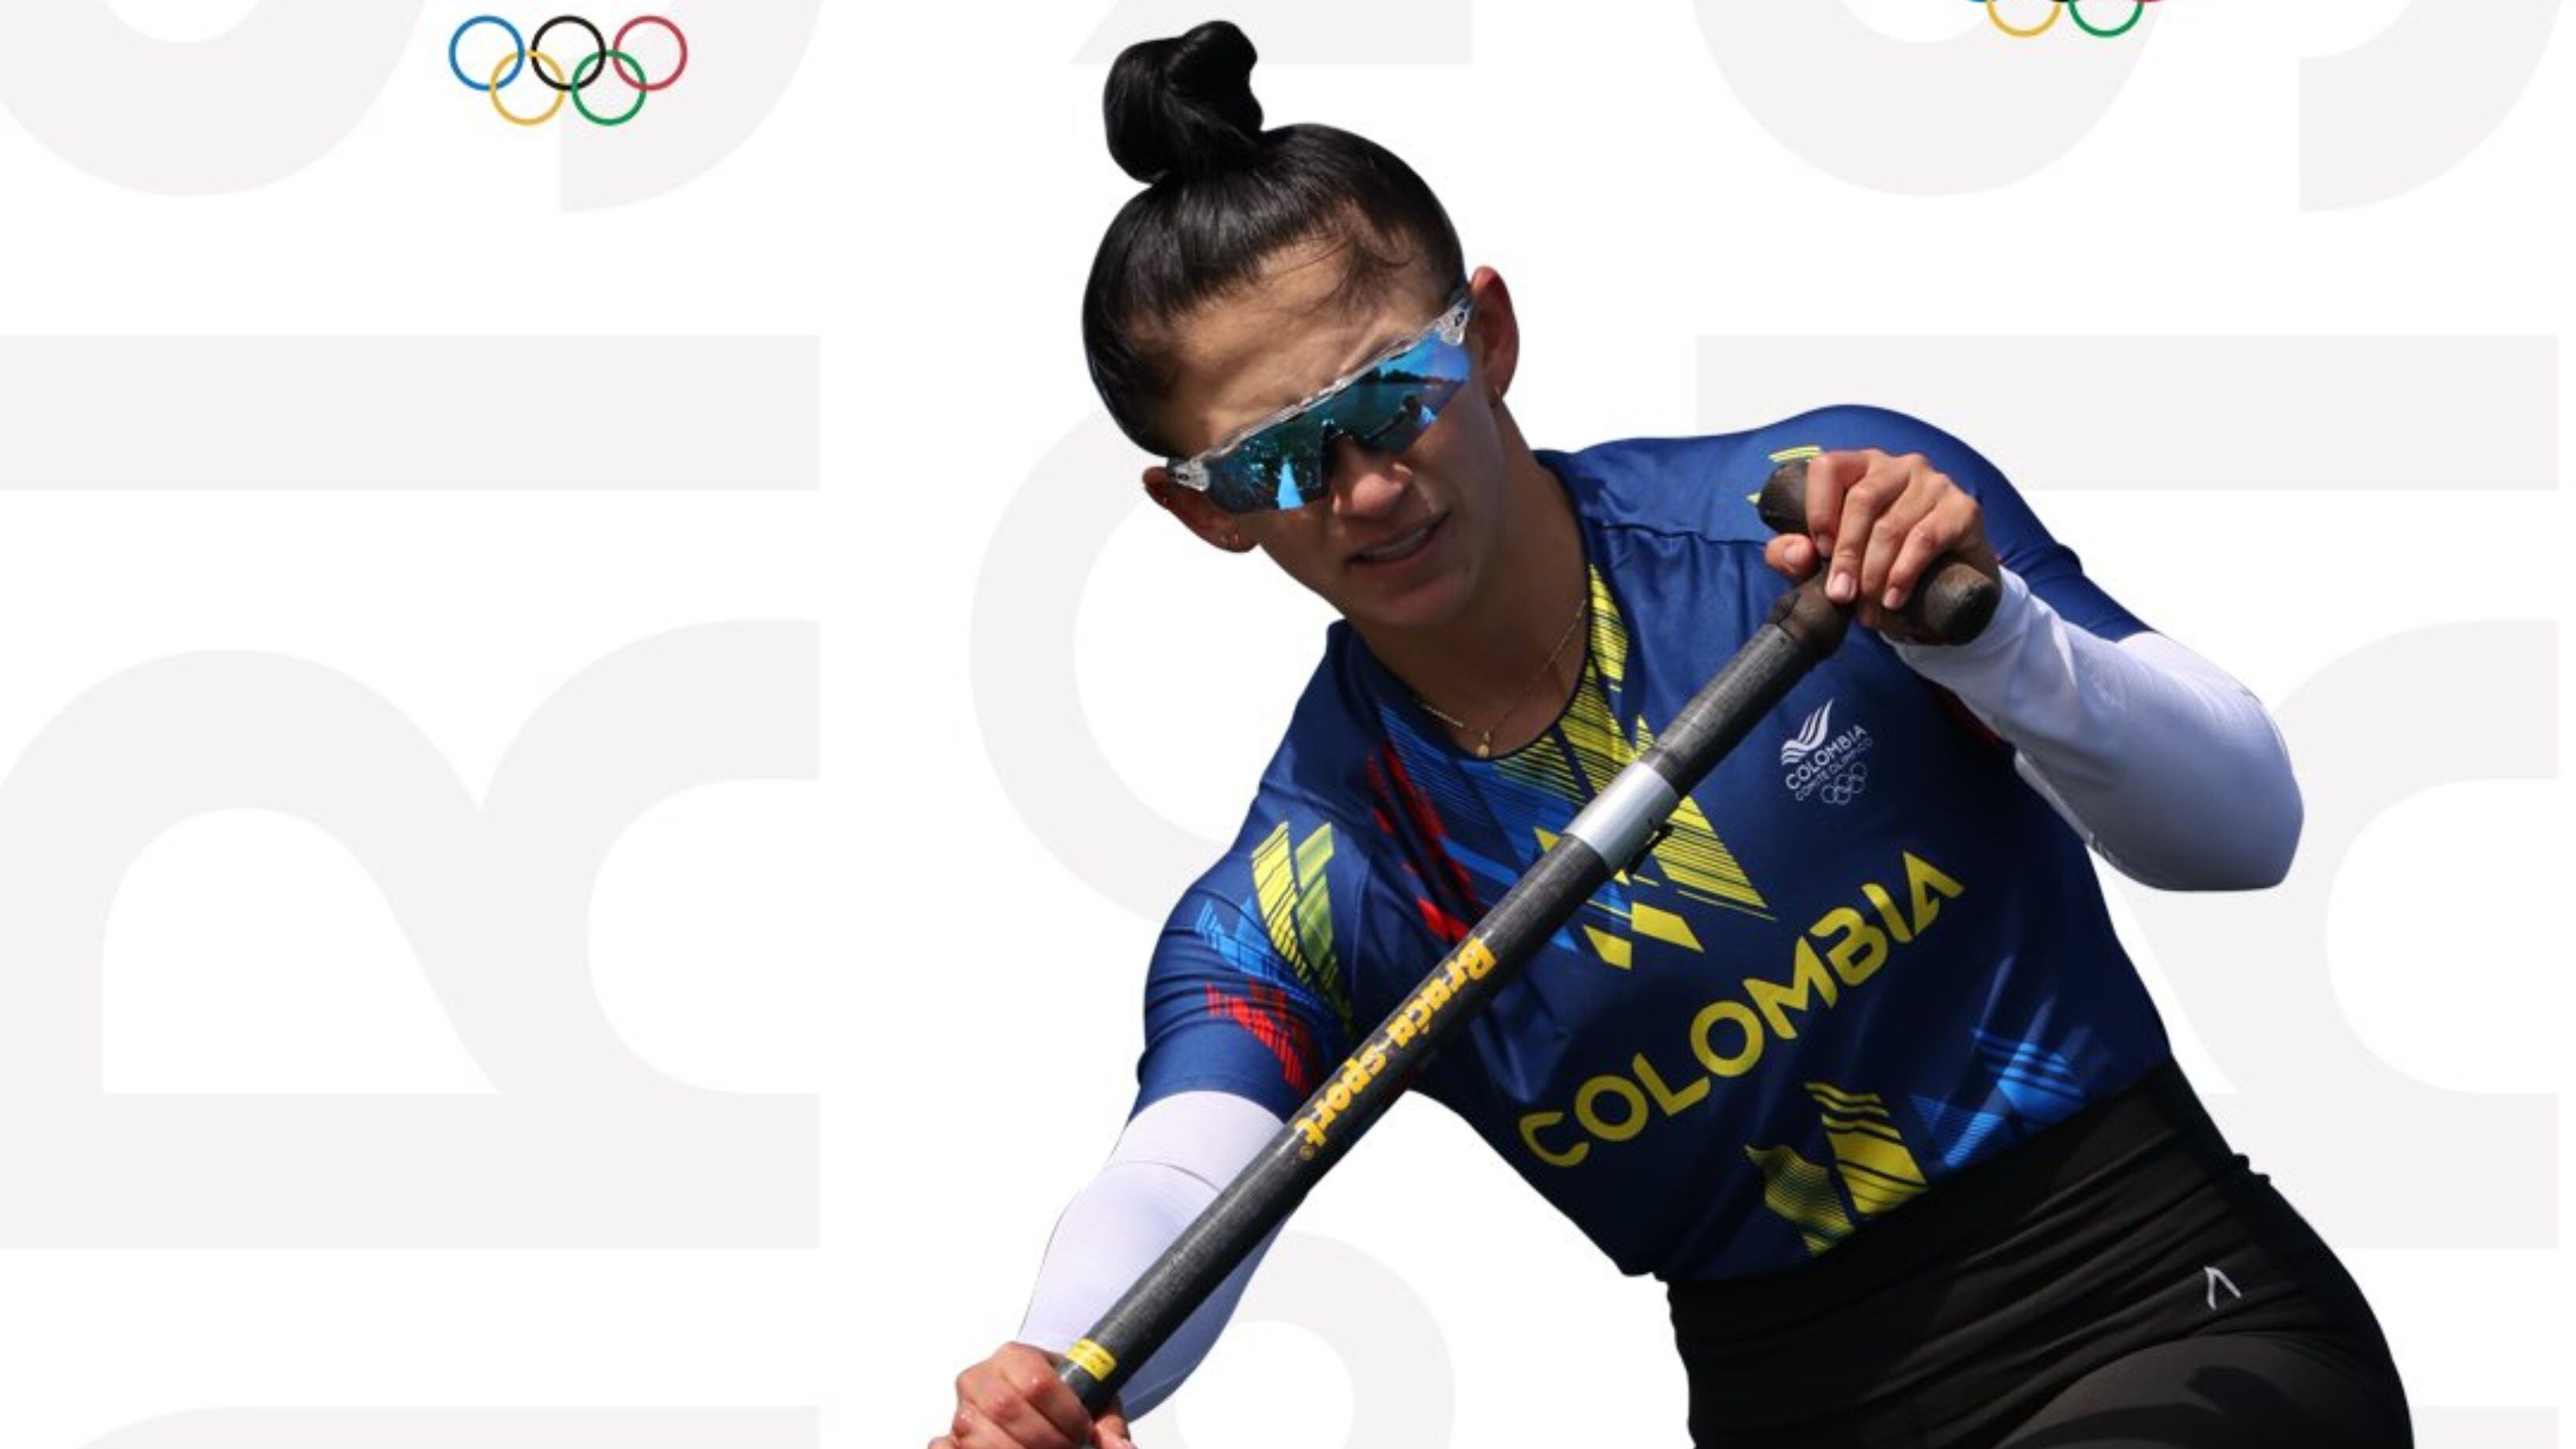 Colombia espera llegar a 80 deportistas clasificados para los Juegos Olímpicos París 2024 - crédito Comité Olímpico Colombiano